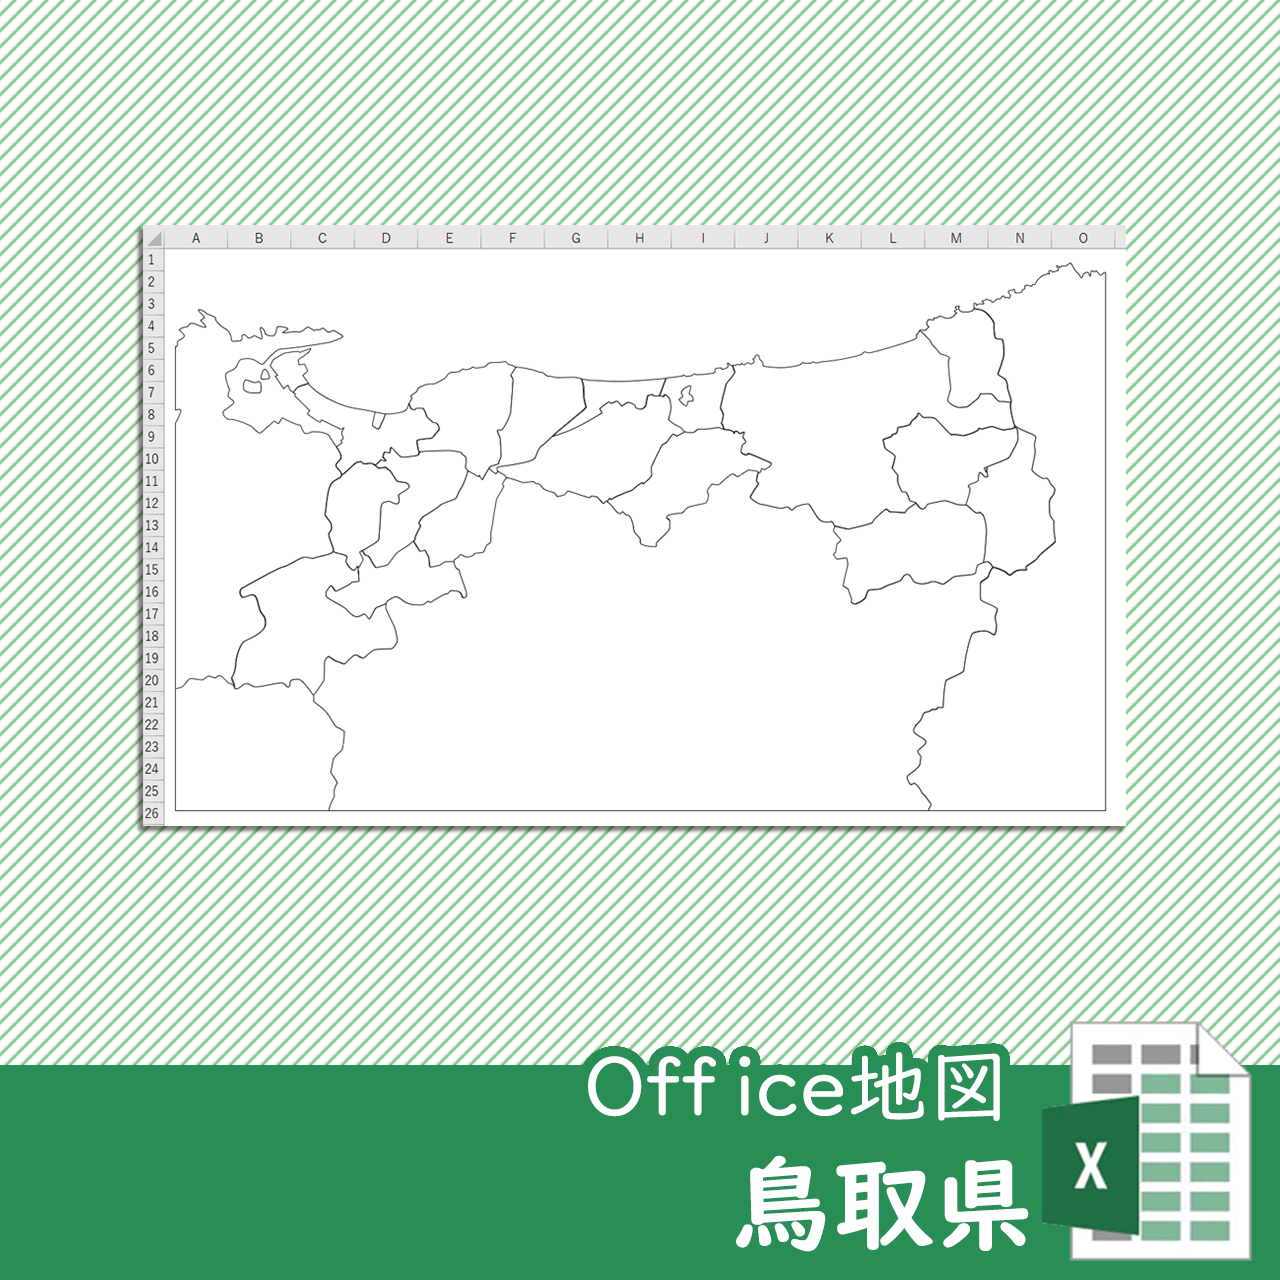 鳥取県のoffice地図